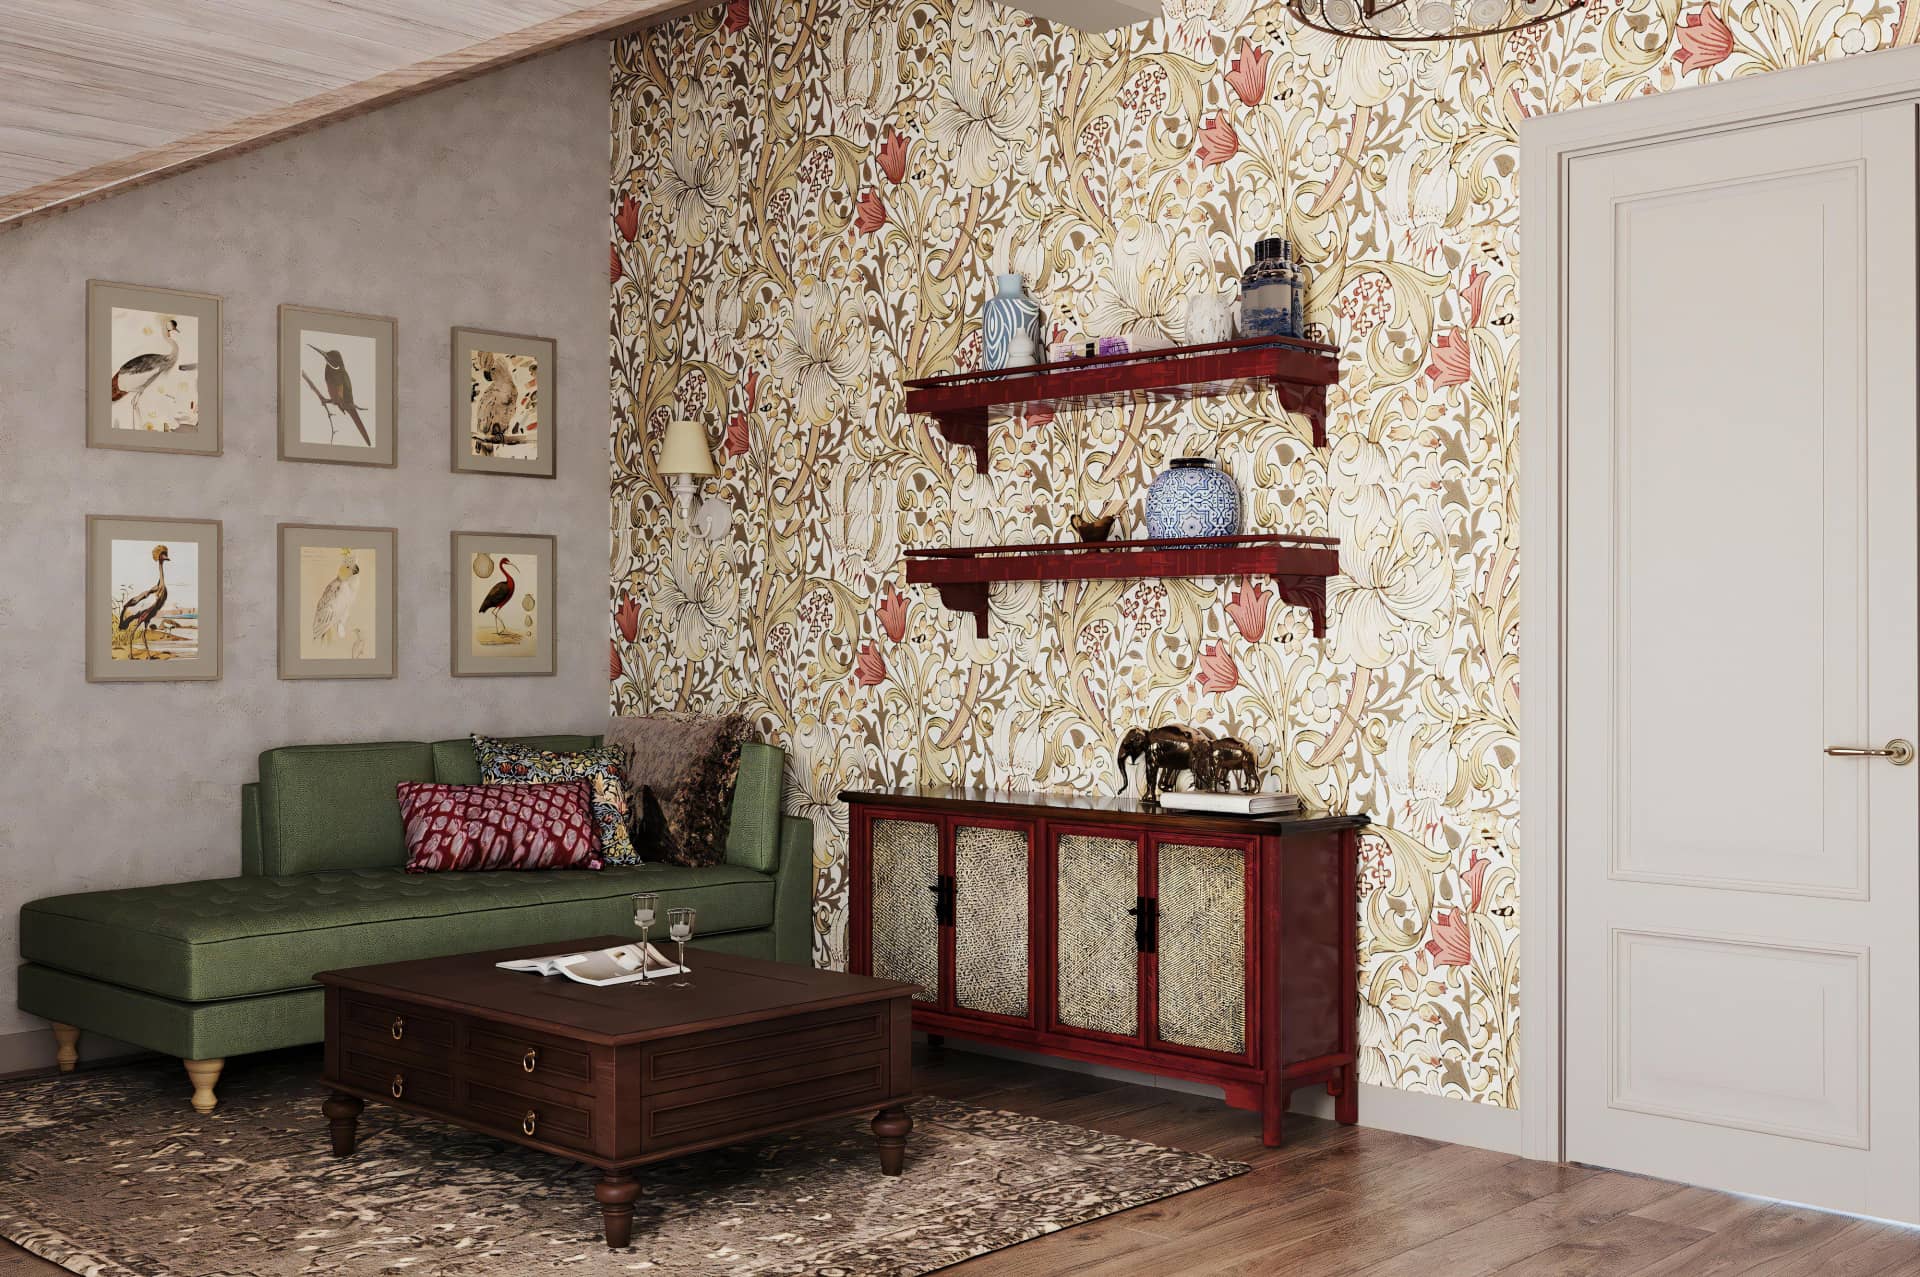 Яркая мебель и текстиль в сочетании с обоями превратили комнату в цветущий сад